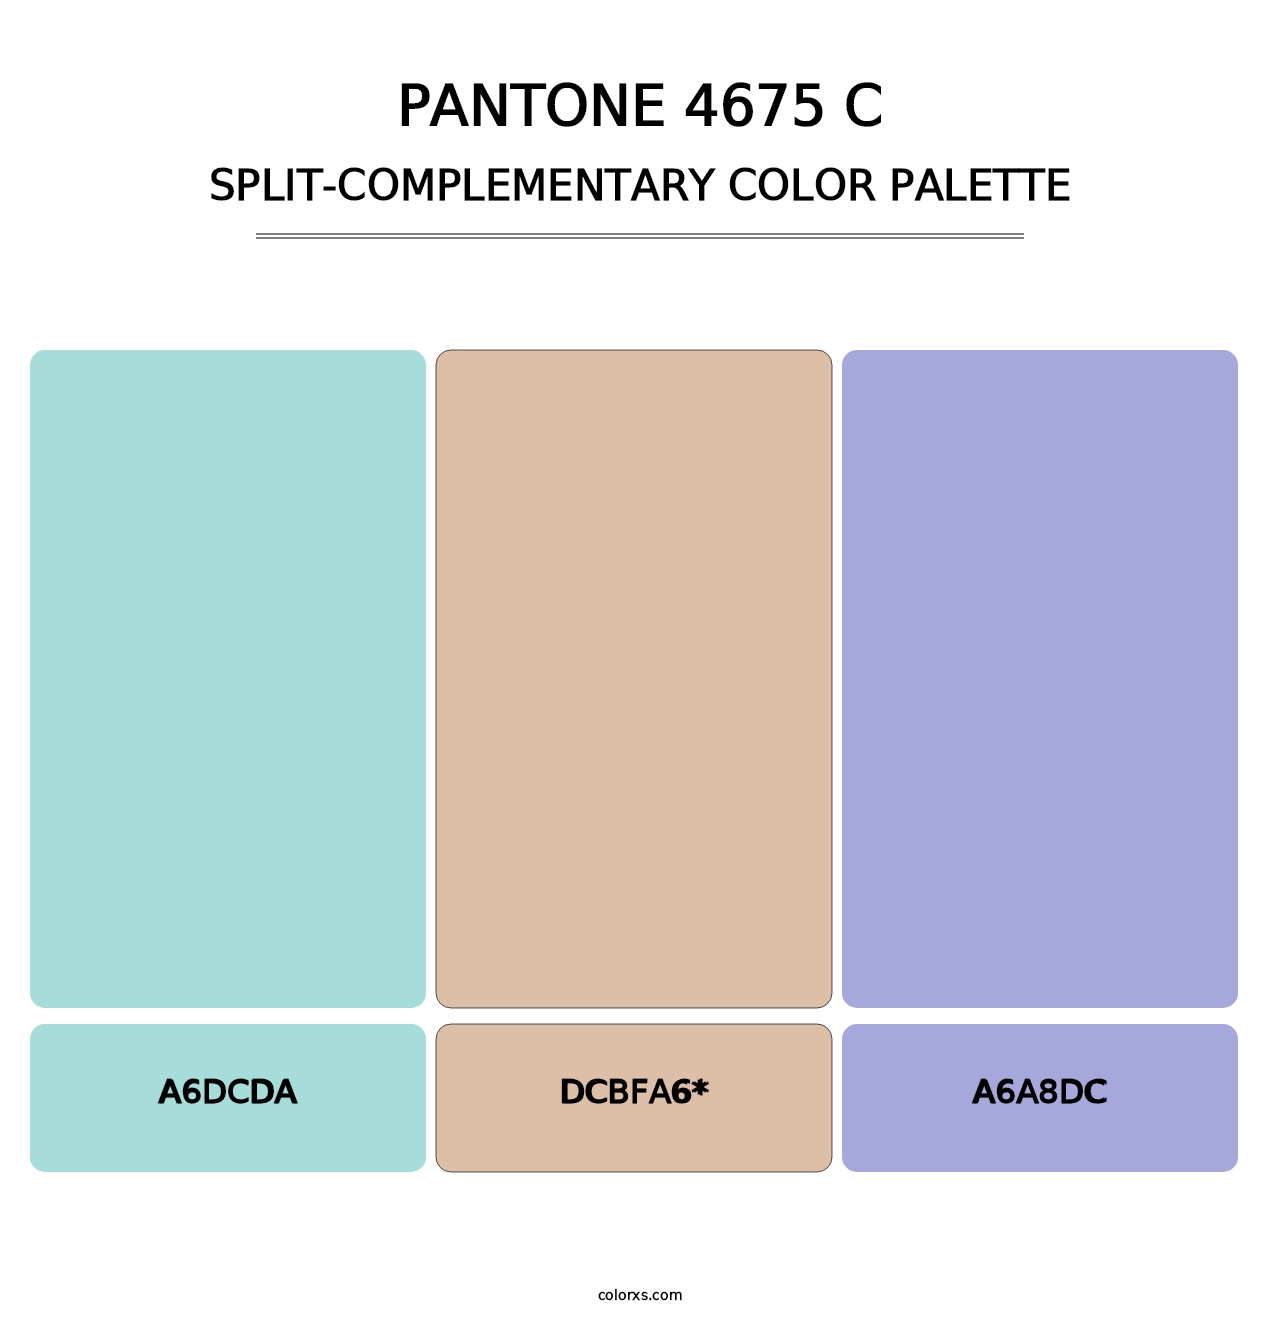 PANTONE 4675 C - Split-Complementary Color Palette